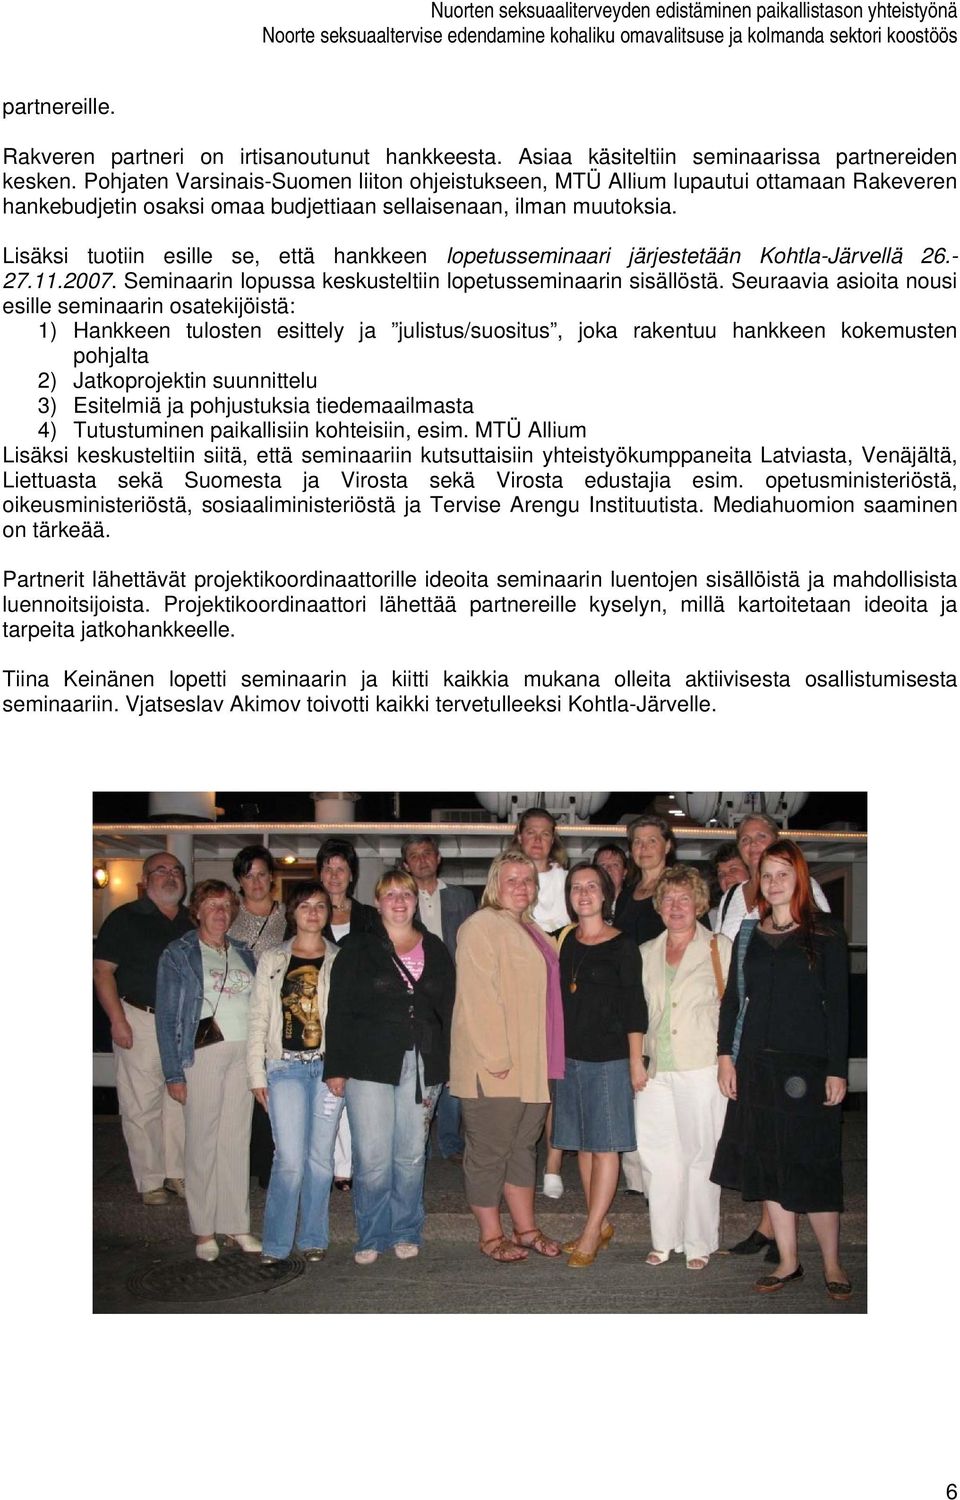 Lisäksi tuotiin esille se, että hankkeen lopetusseminaari järjestetään Kohtla-Järvellä 26.- 27.11.2007. Seminaarin lopussa keskusteltiin lopetusseminaarin sisällöstä.